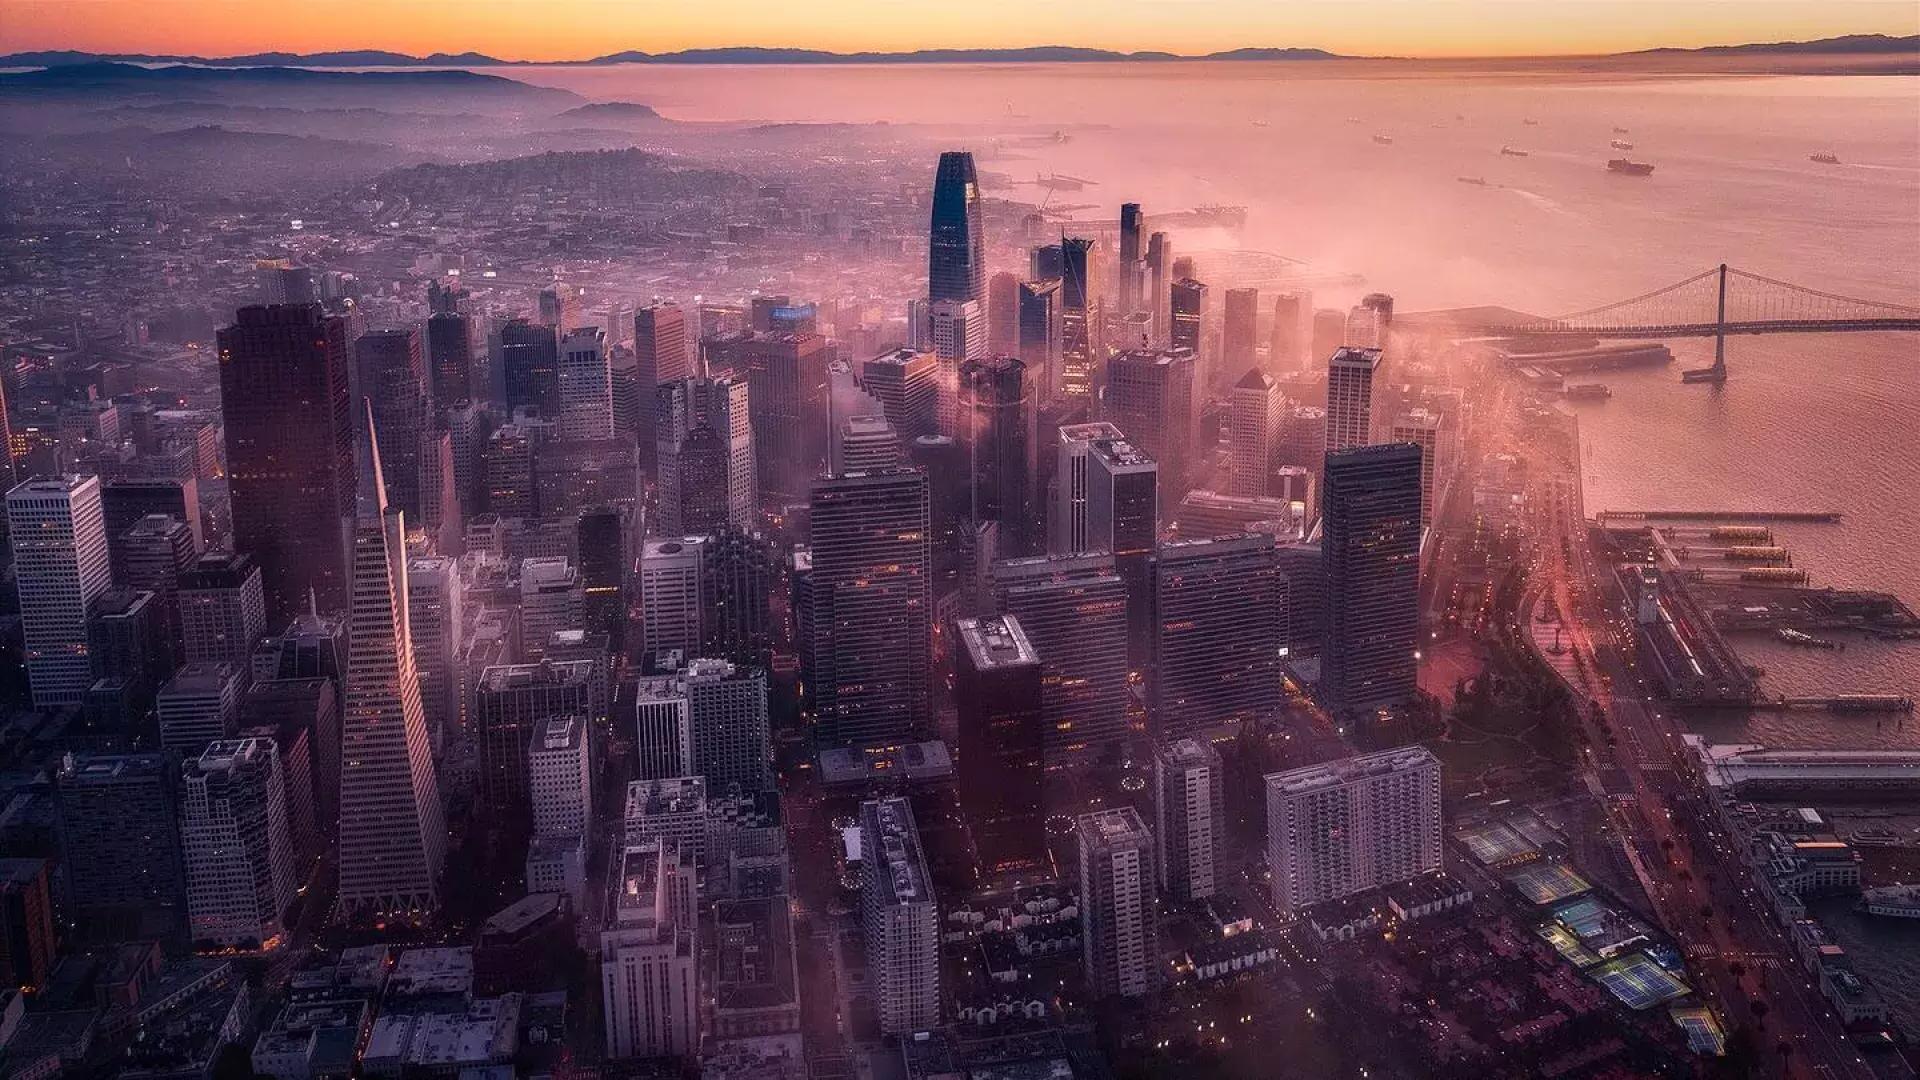 San Francisco at dusk